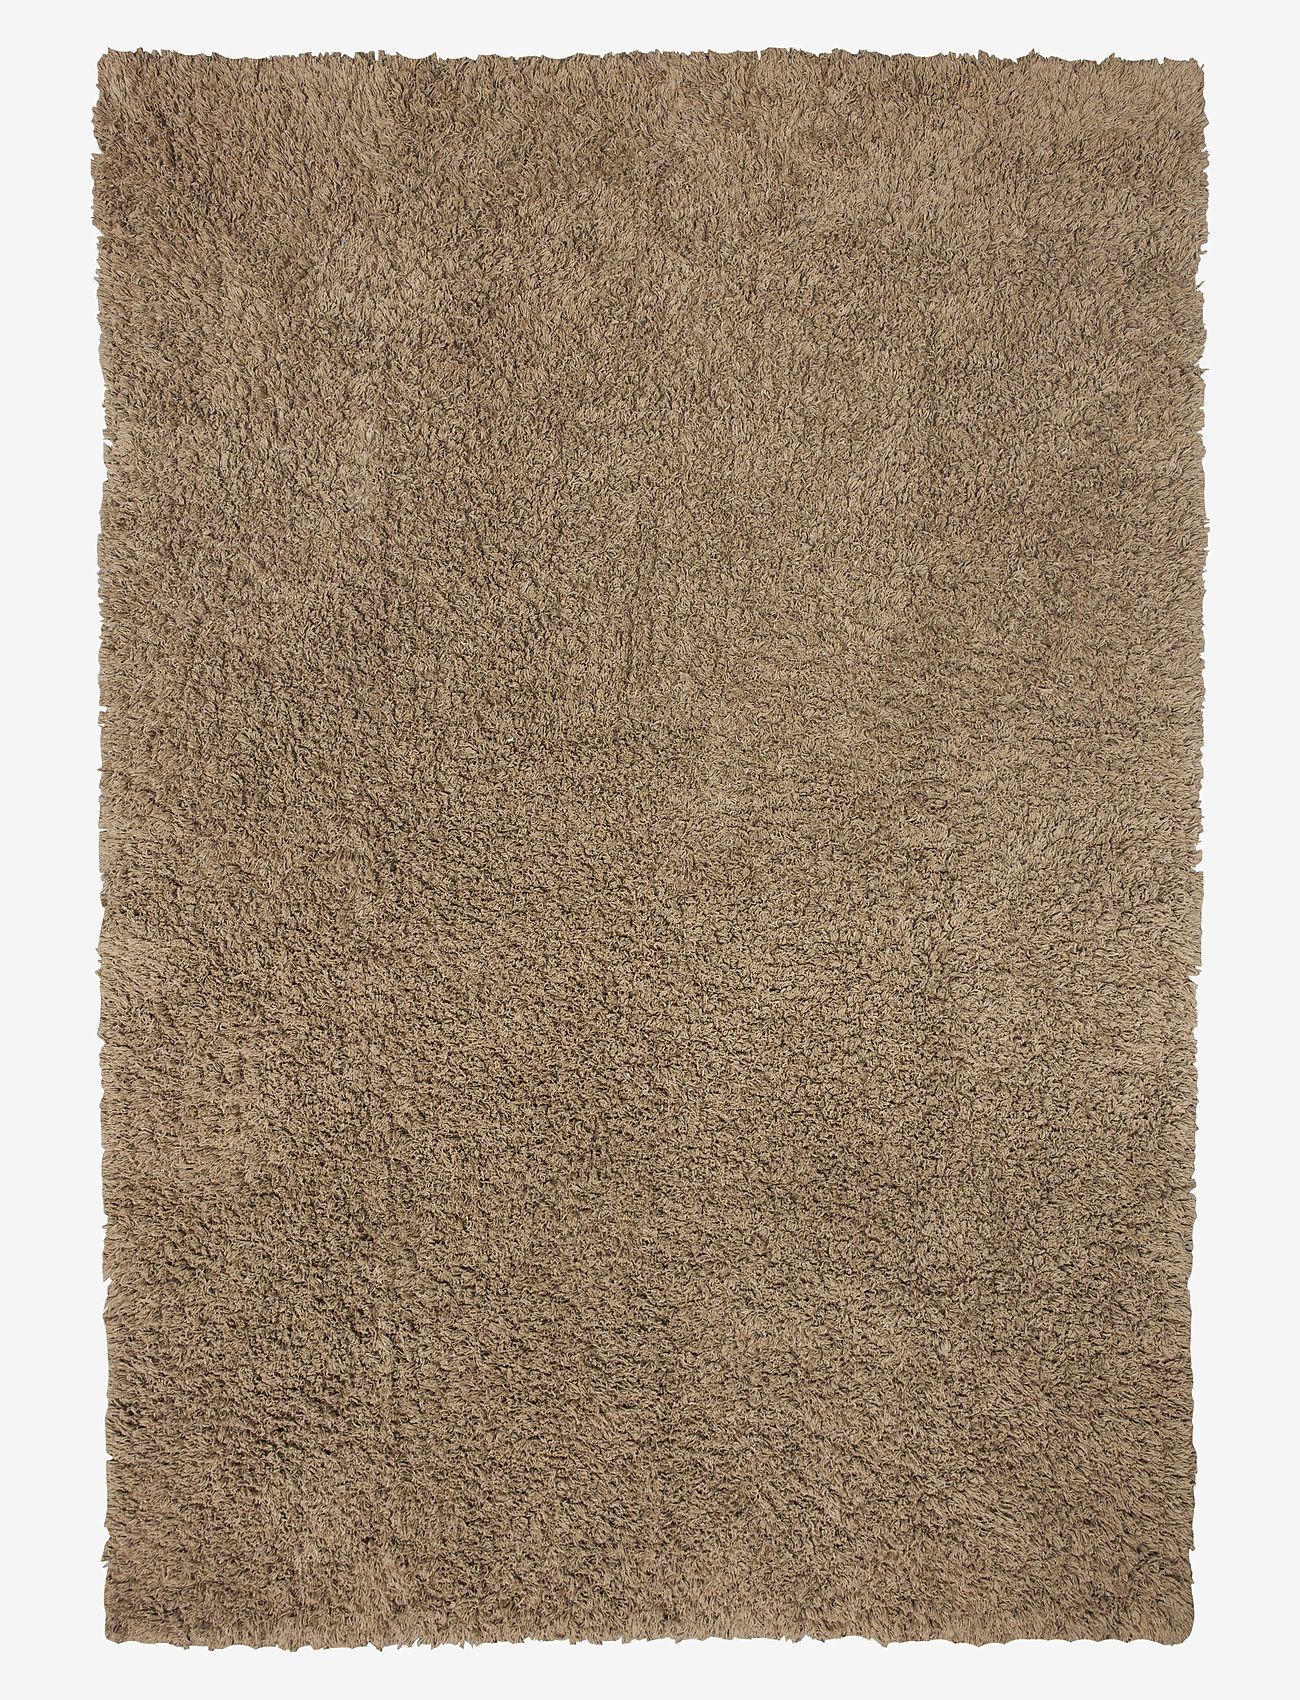 Boel & Jan - Carpet - Noma - wool rugs - brown - 0